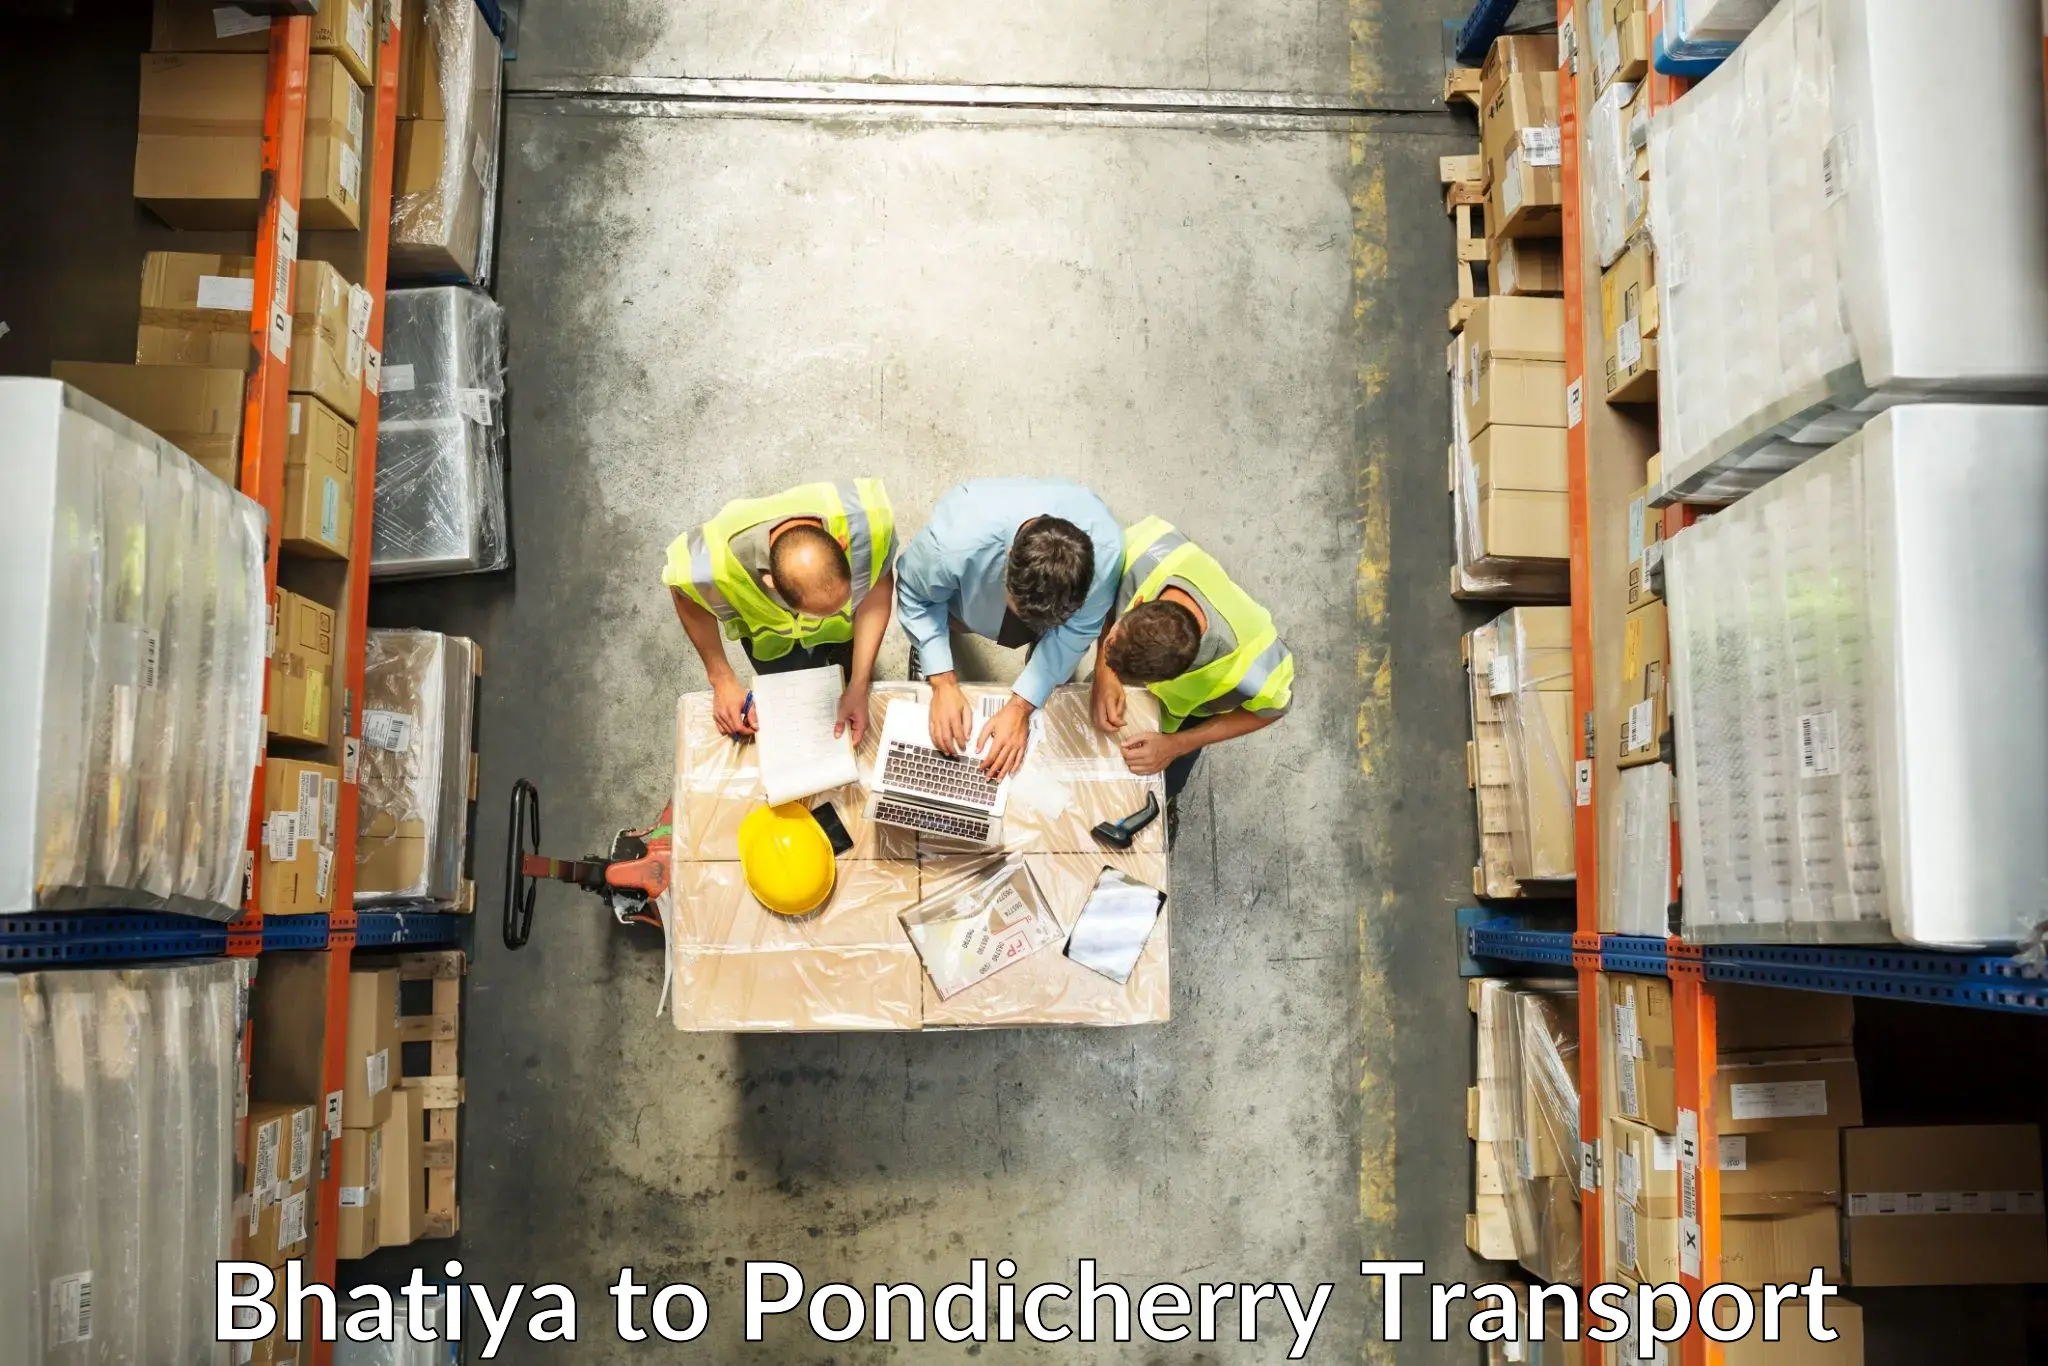 Delivery service Bhatiya to Pondicherry University